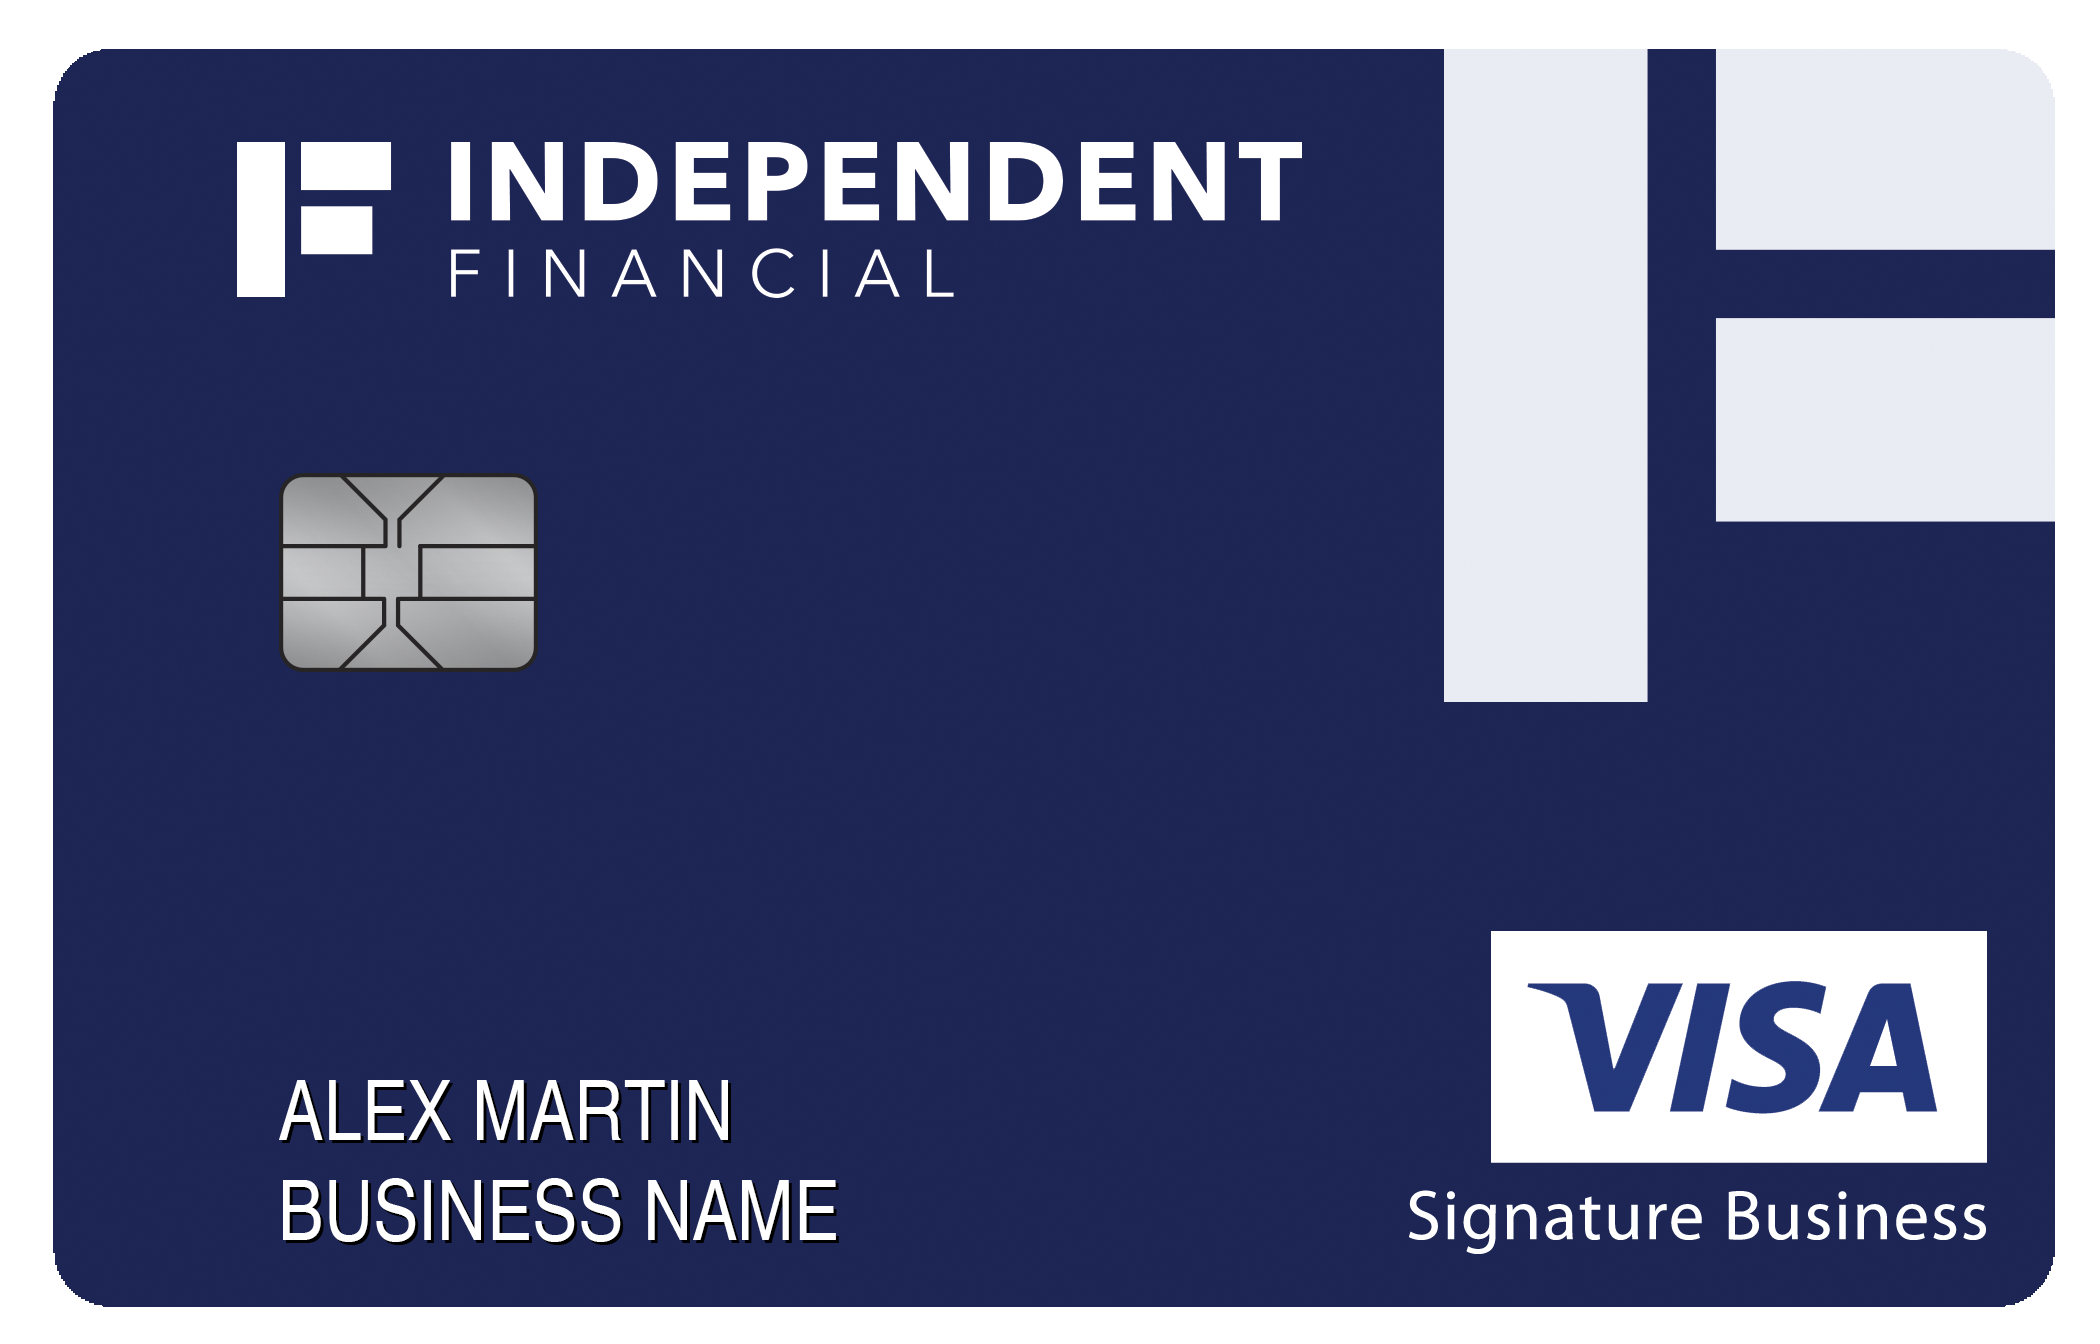 Independent Bank Smart Business Rewards Card